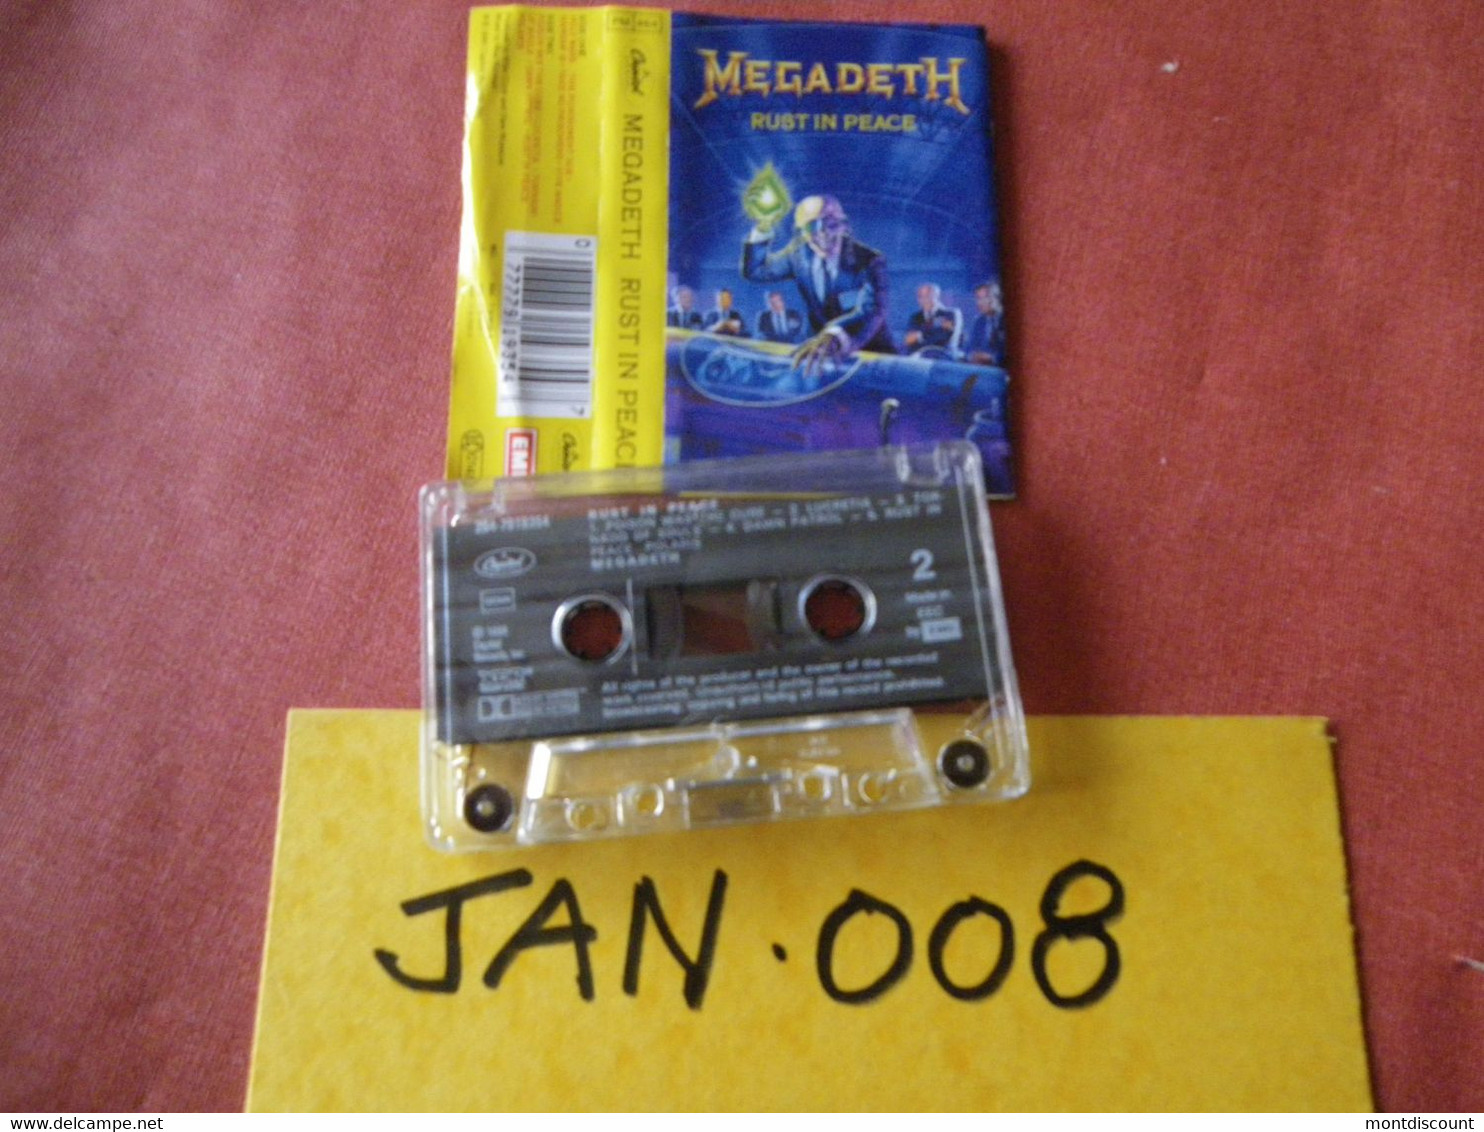 MEGADEATH K7 AUDIO VOIR PHOTO...ET REGARDEZ LES AUTRES (PLUSIEURS) (JAN 008) - Cassettes Audio